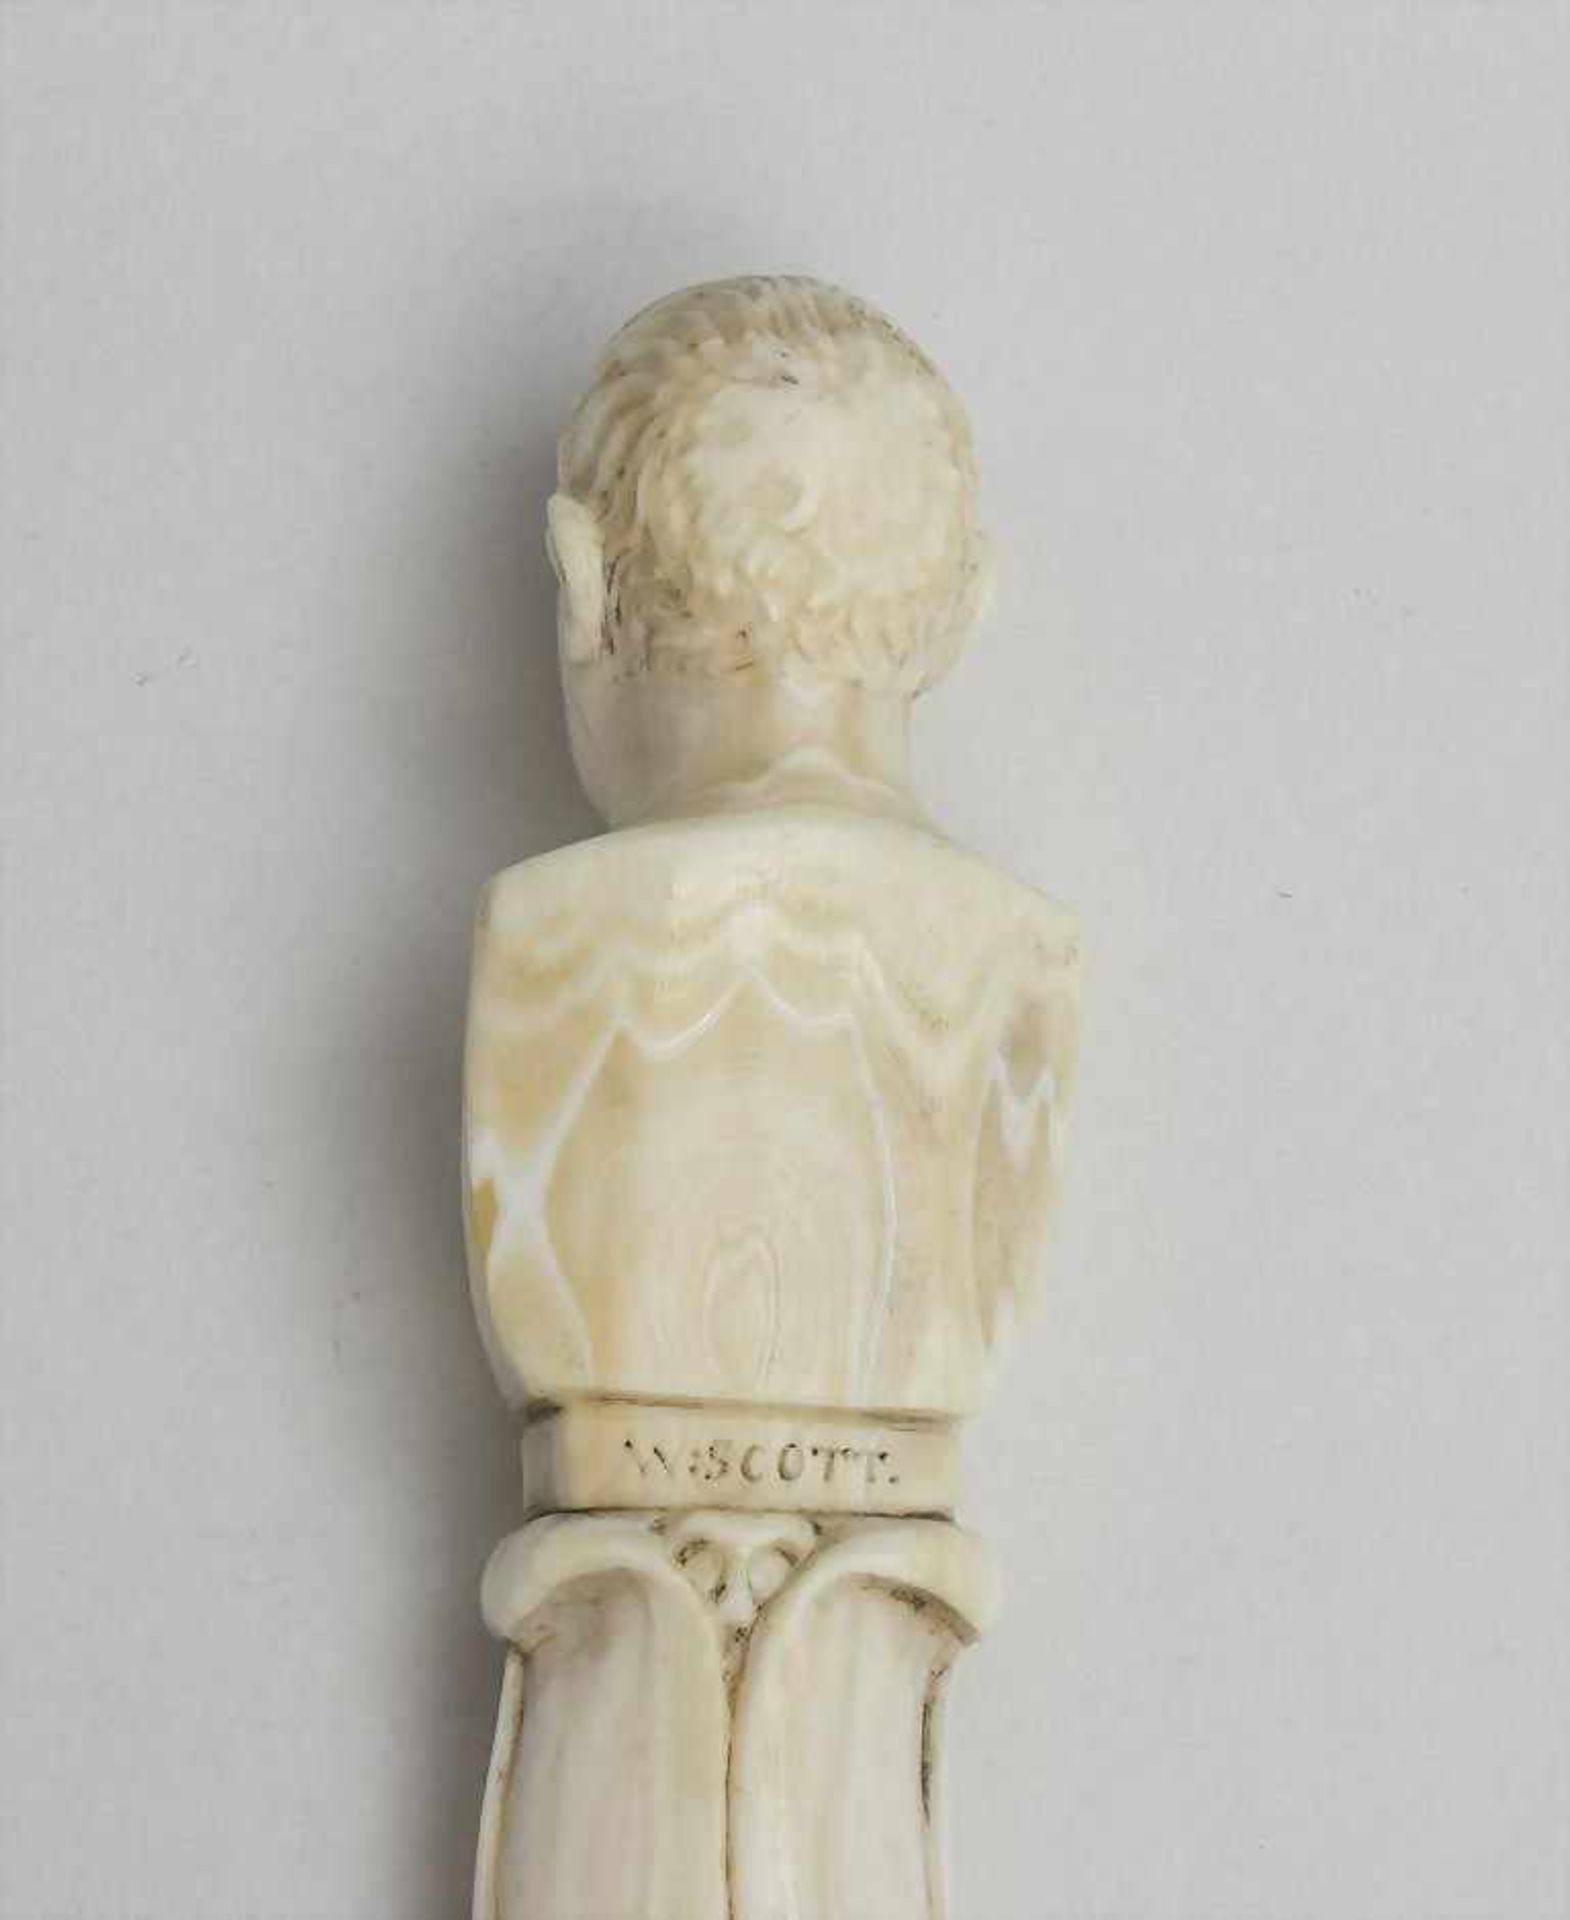 Brieföffner, Sir Walter Scott, 19. Jh.Elfenbein fein geschnitzt, als Griff die Büste von Sir - Bild 3 aus 3